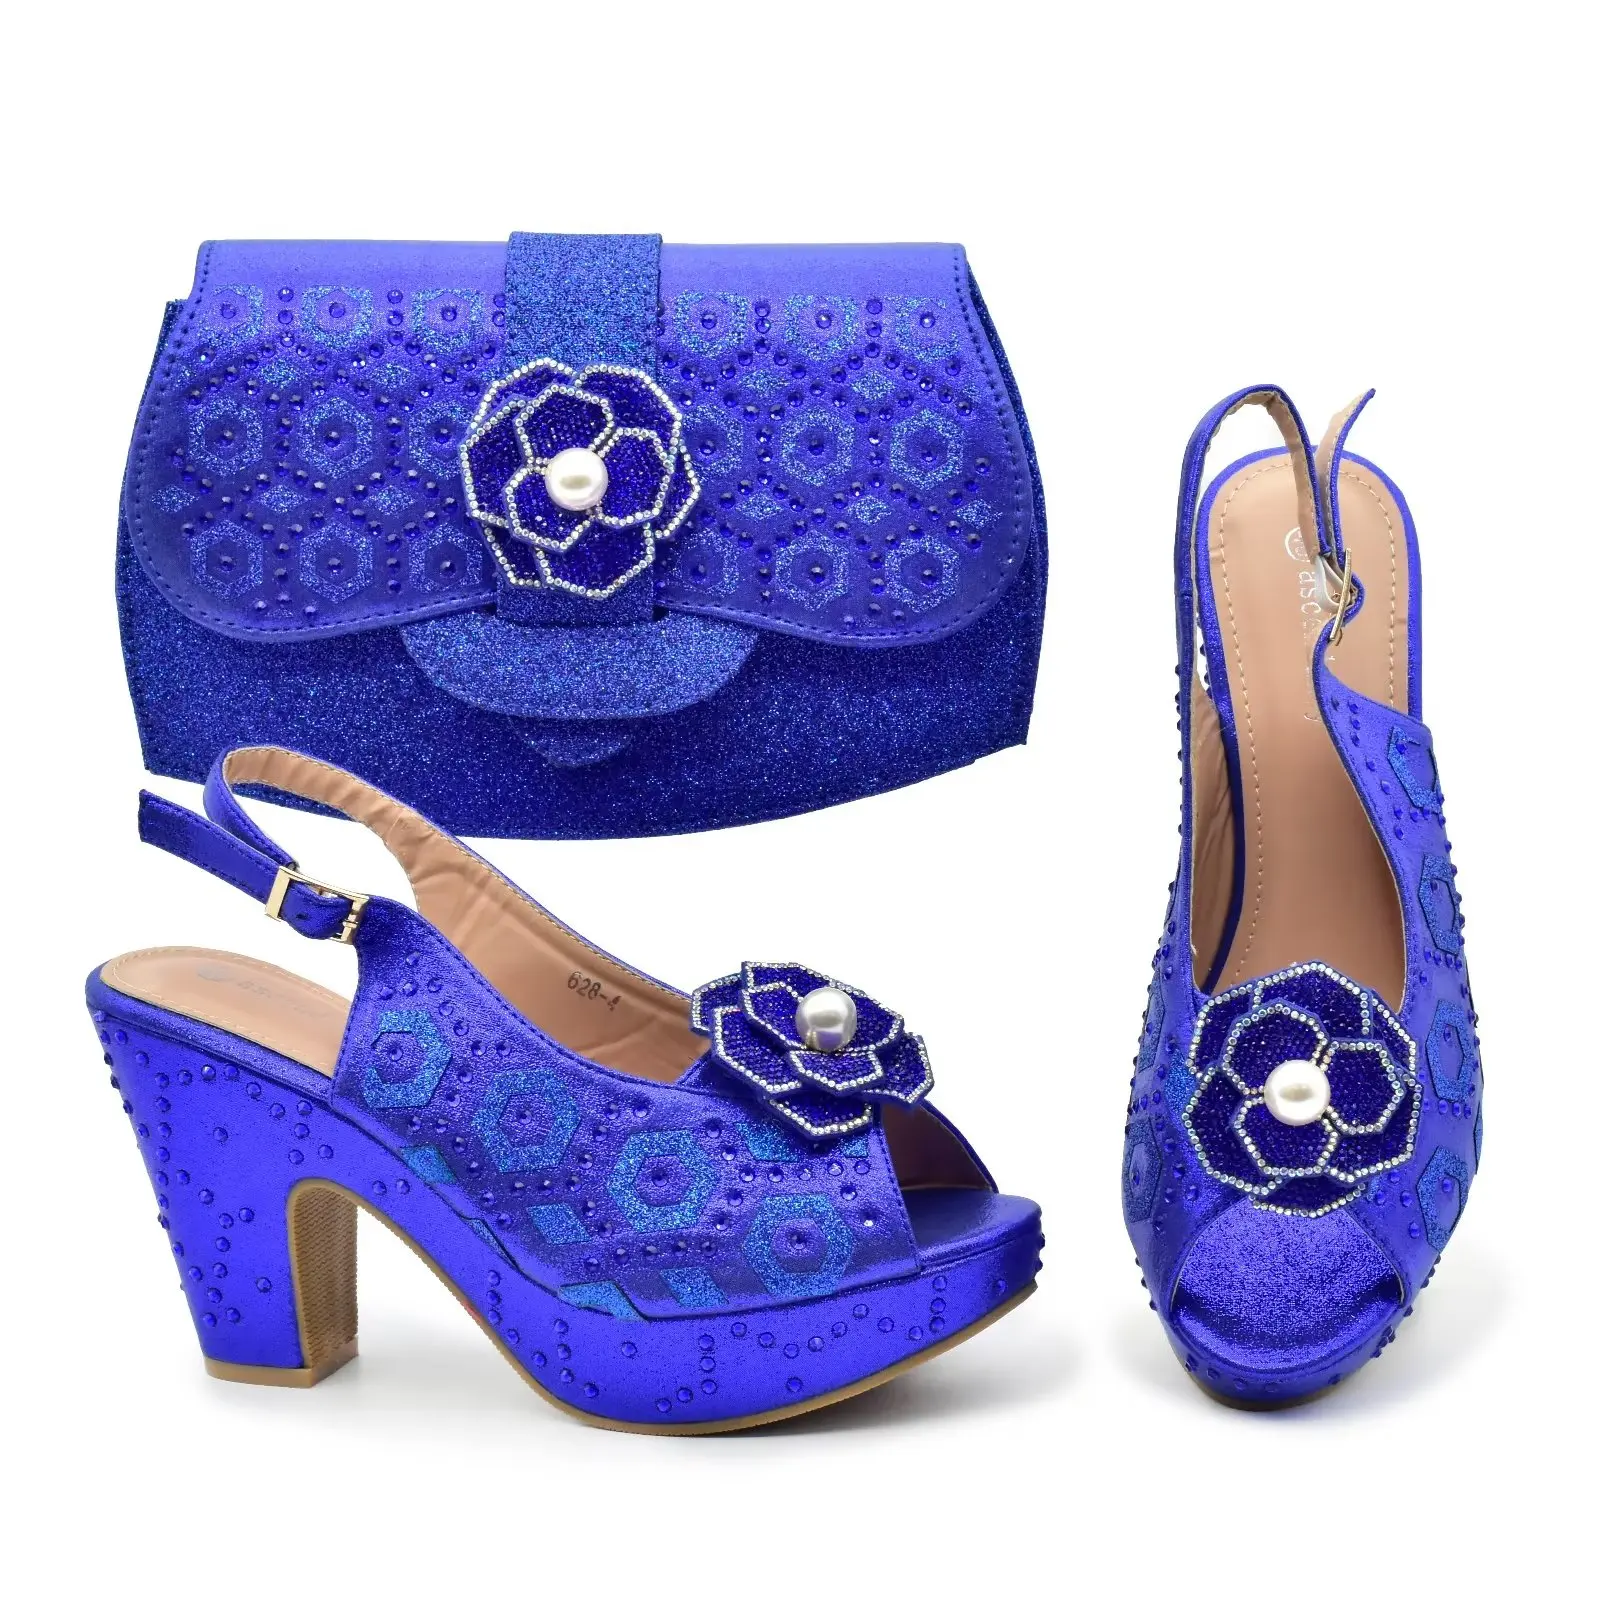 Doershow Очаровательные туфли и сумки, соответствующие набору с синей горячей продажей женской итальянской обуви и сумки для вечеринки на свадьбе!  ХГВ1-1